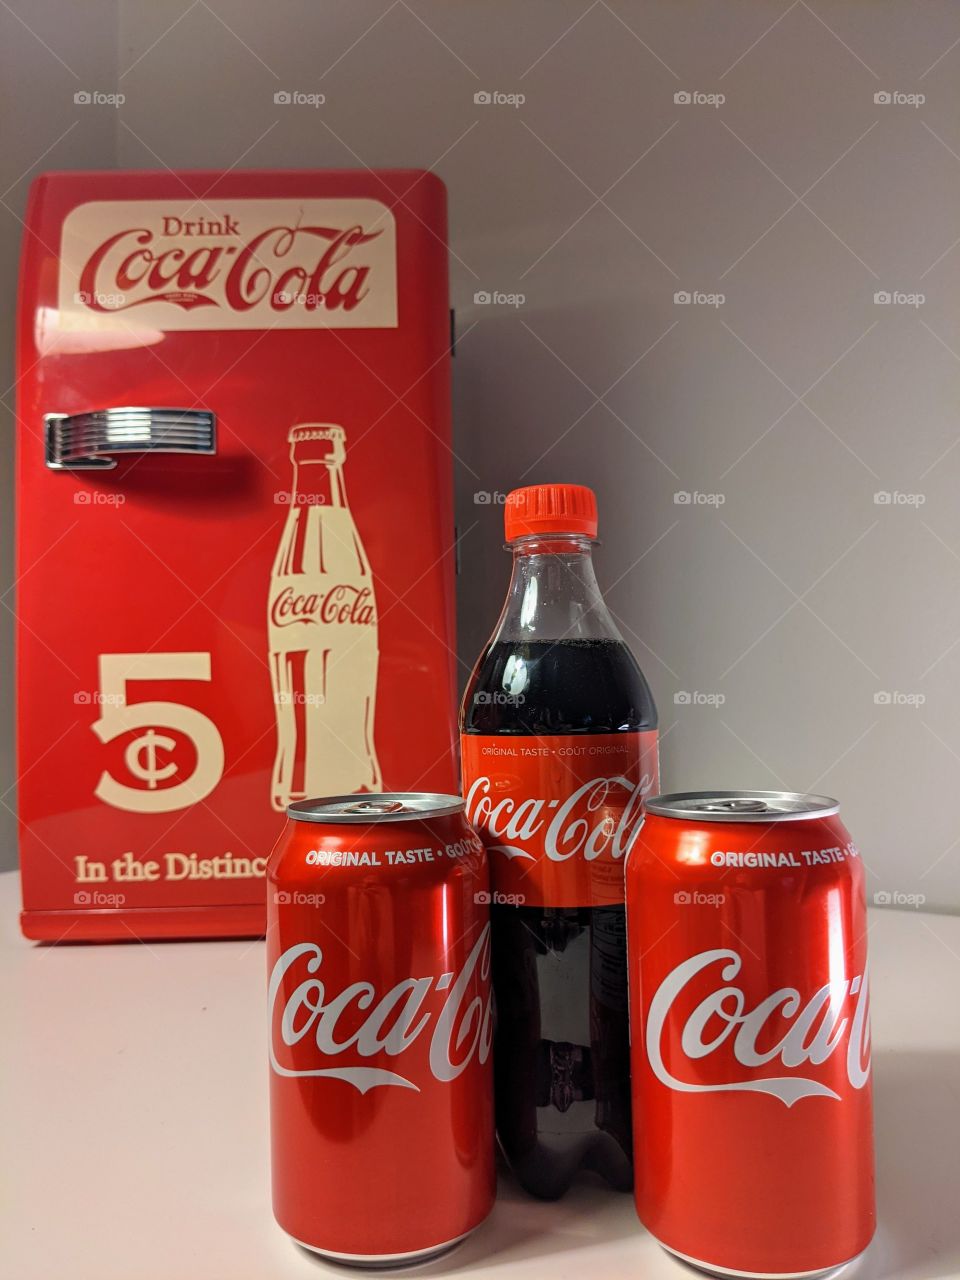 Coca-Cola mini fridge with Coca-Cola beverages